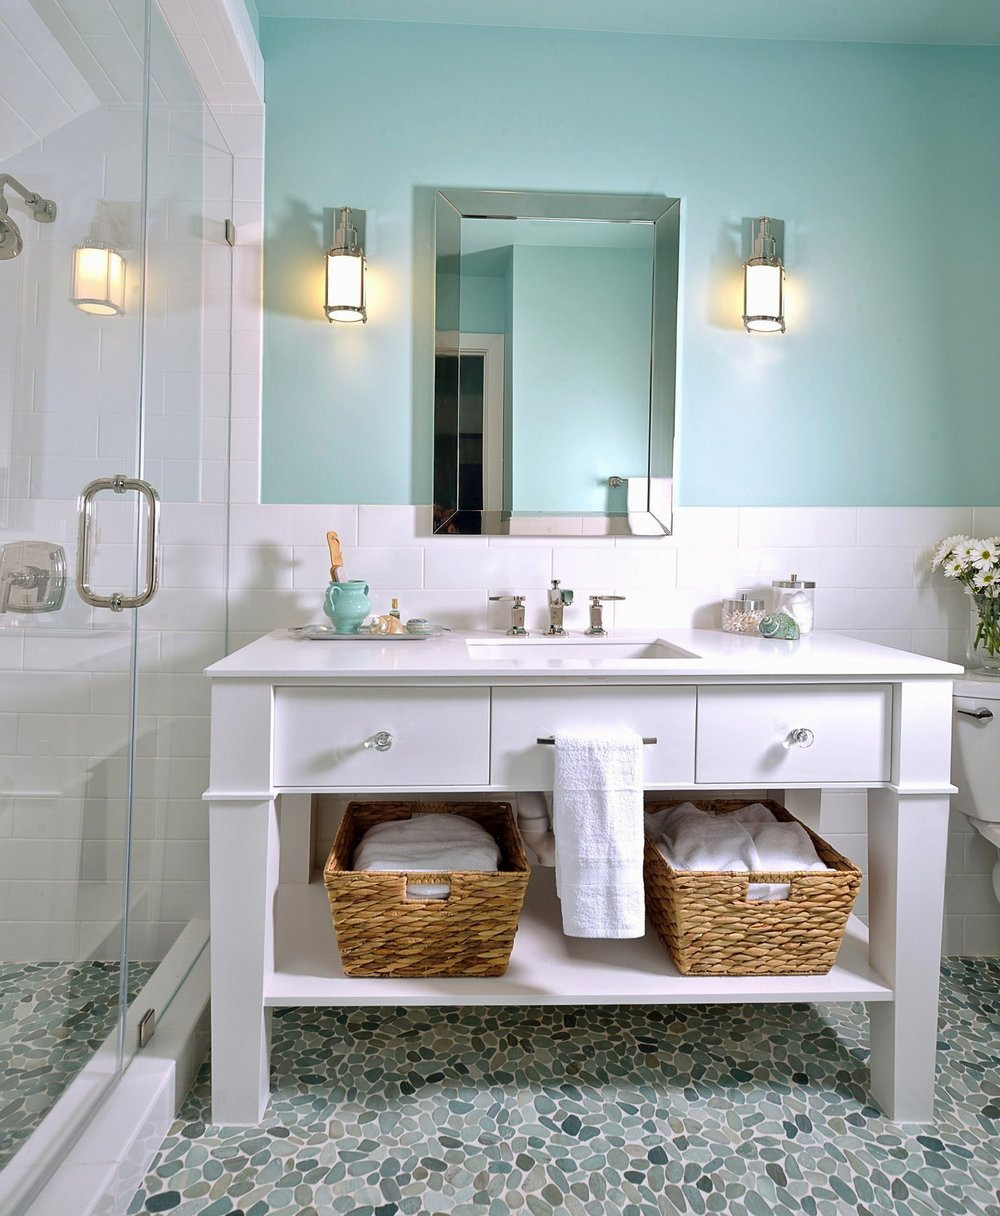 Bathroom Vanity Backsplash
 Backsplash Advice For Your Bathroom Would you tile the